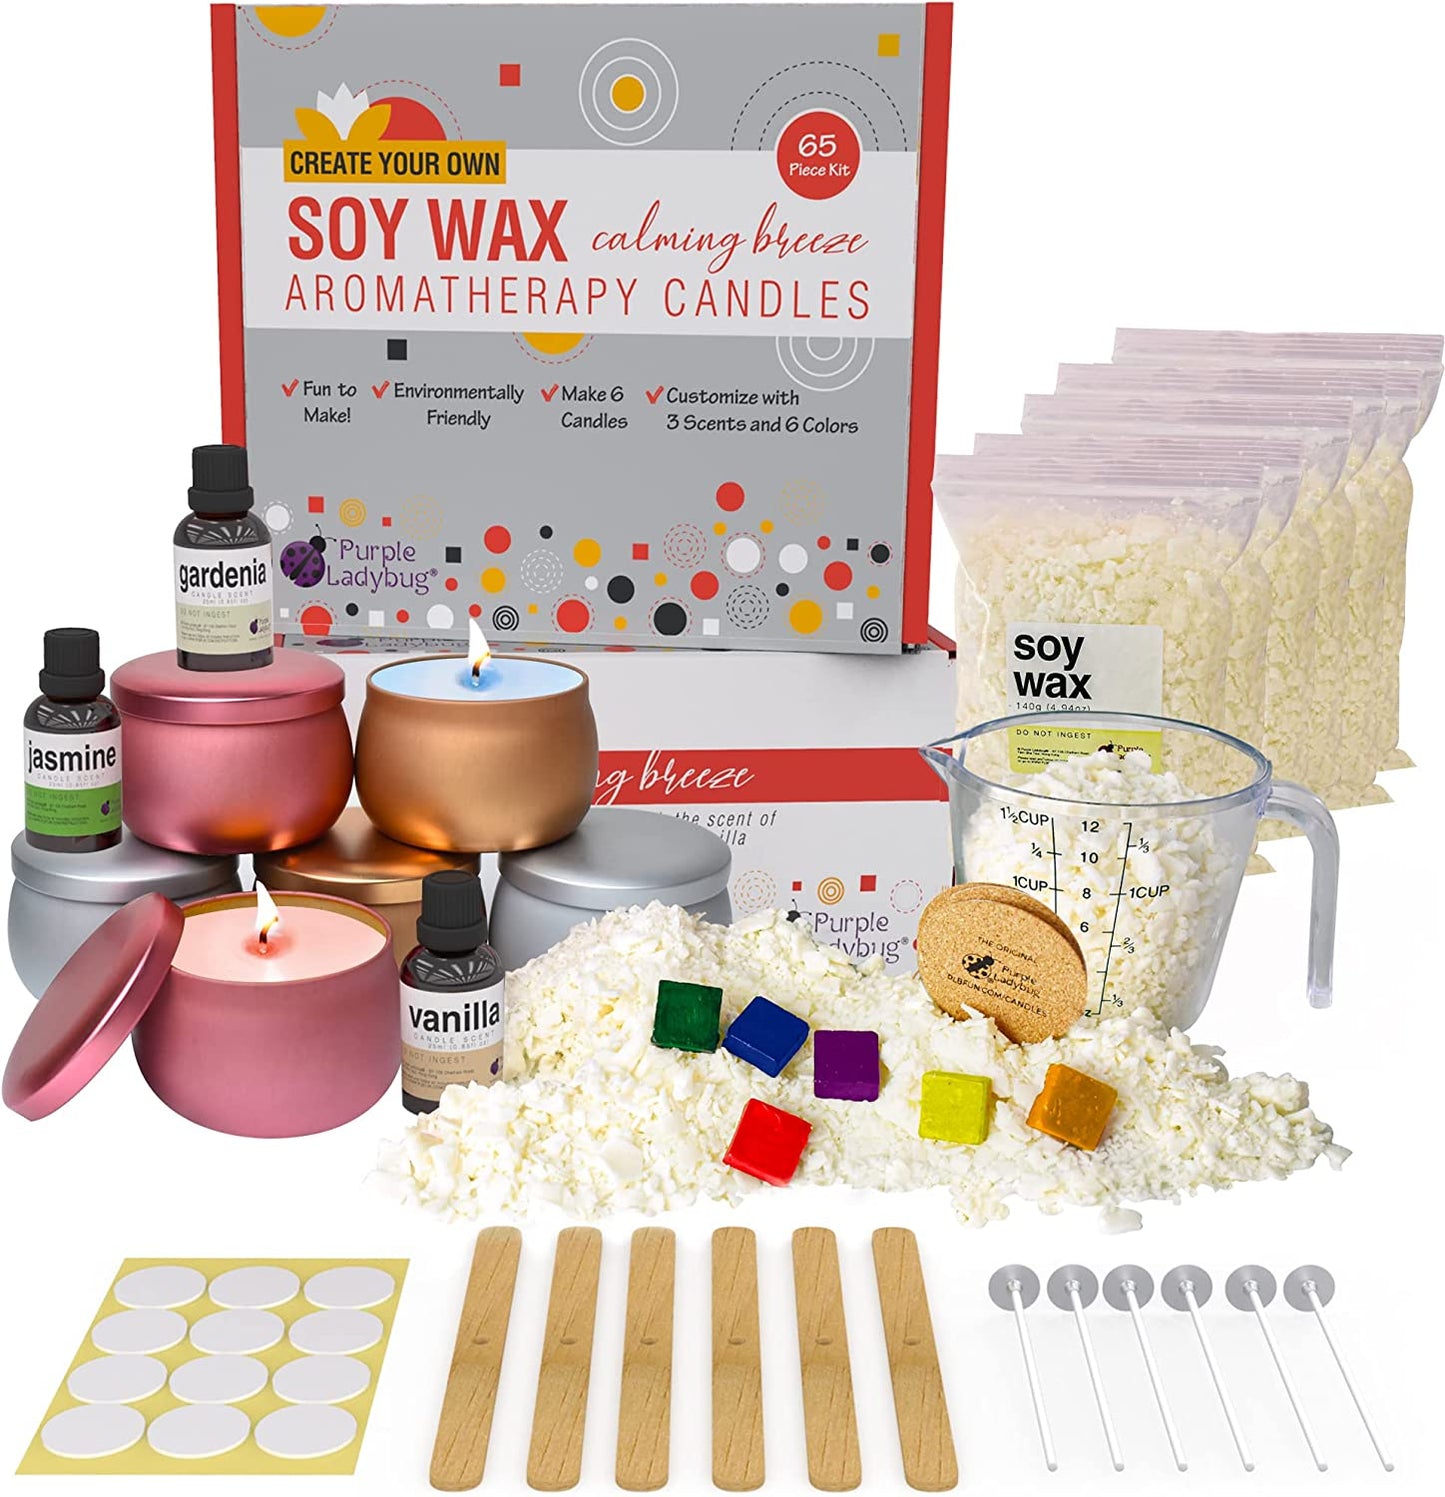 Upgrade Version Candle Making Supplies DIY Candle Making Kit Make